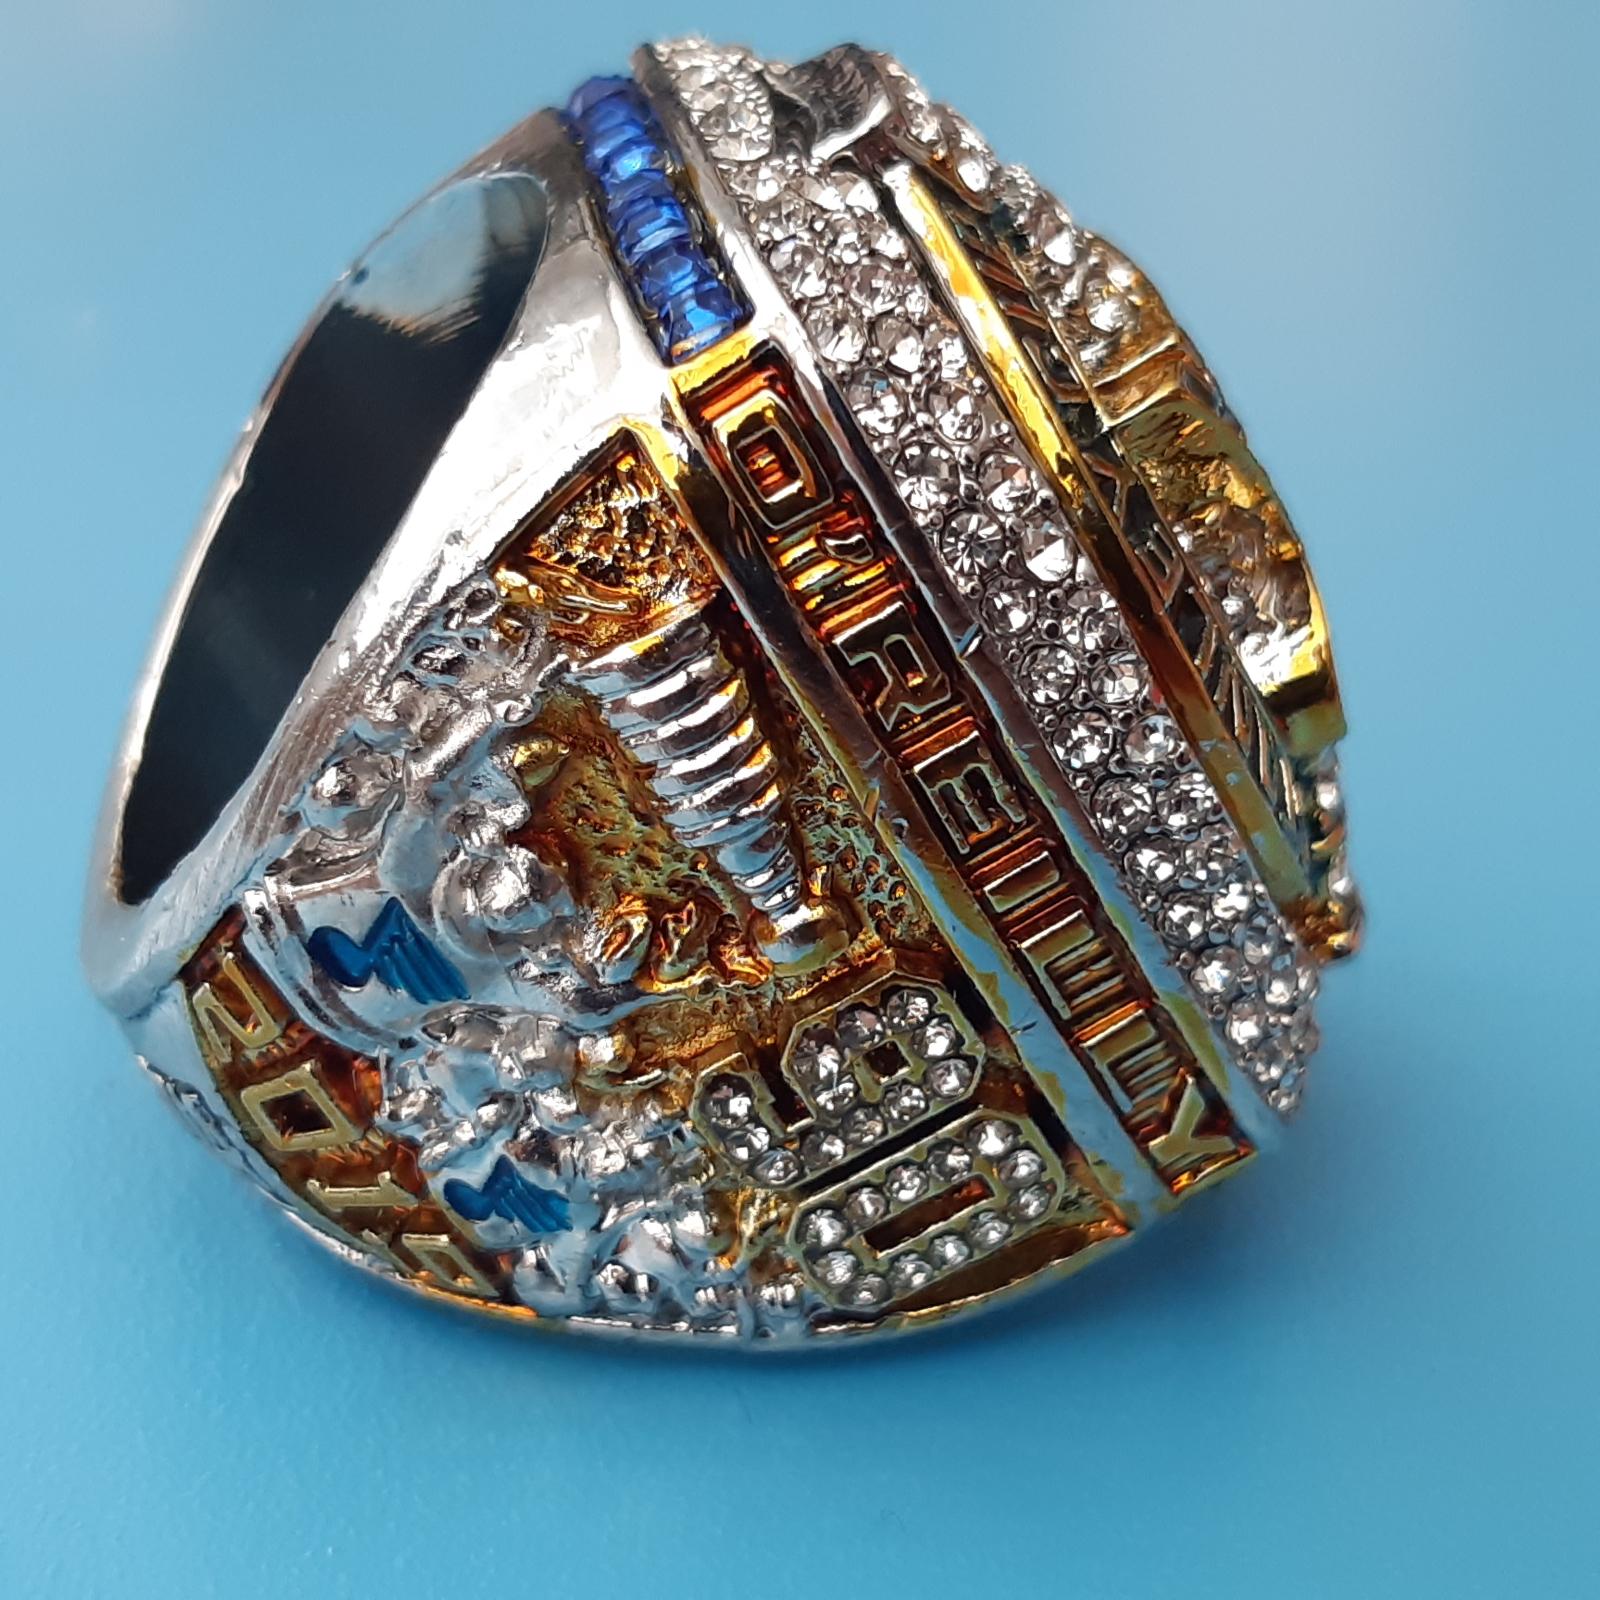 Stanley Cup prsten 2019 St. Louis Blues NHL - Zberateľstvo